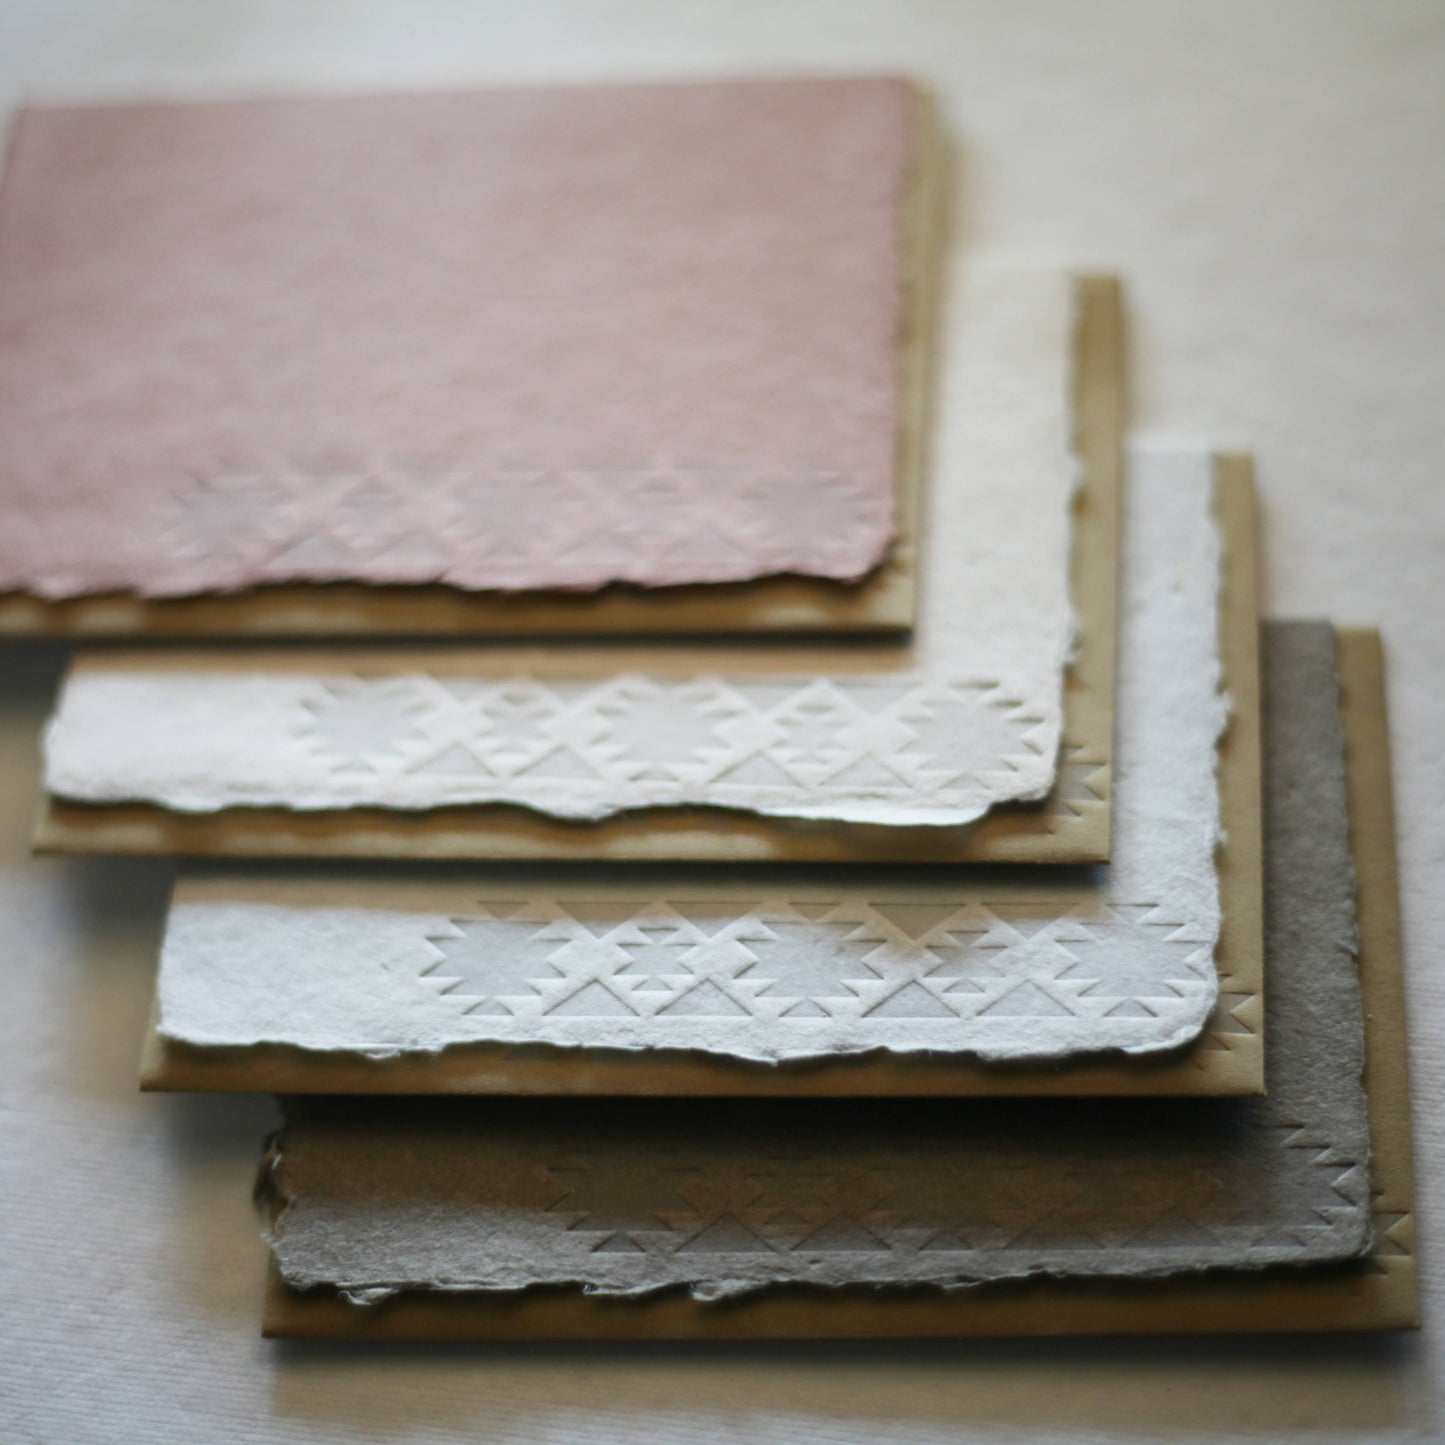 skelley west design co + letterpress - Letterpress card pack | handmade paper | southwest pattern